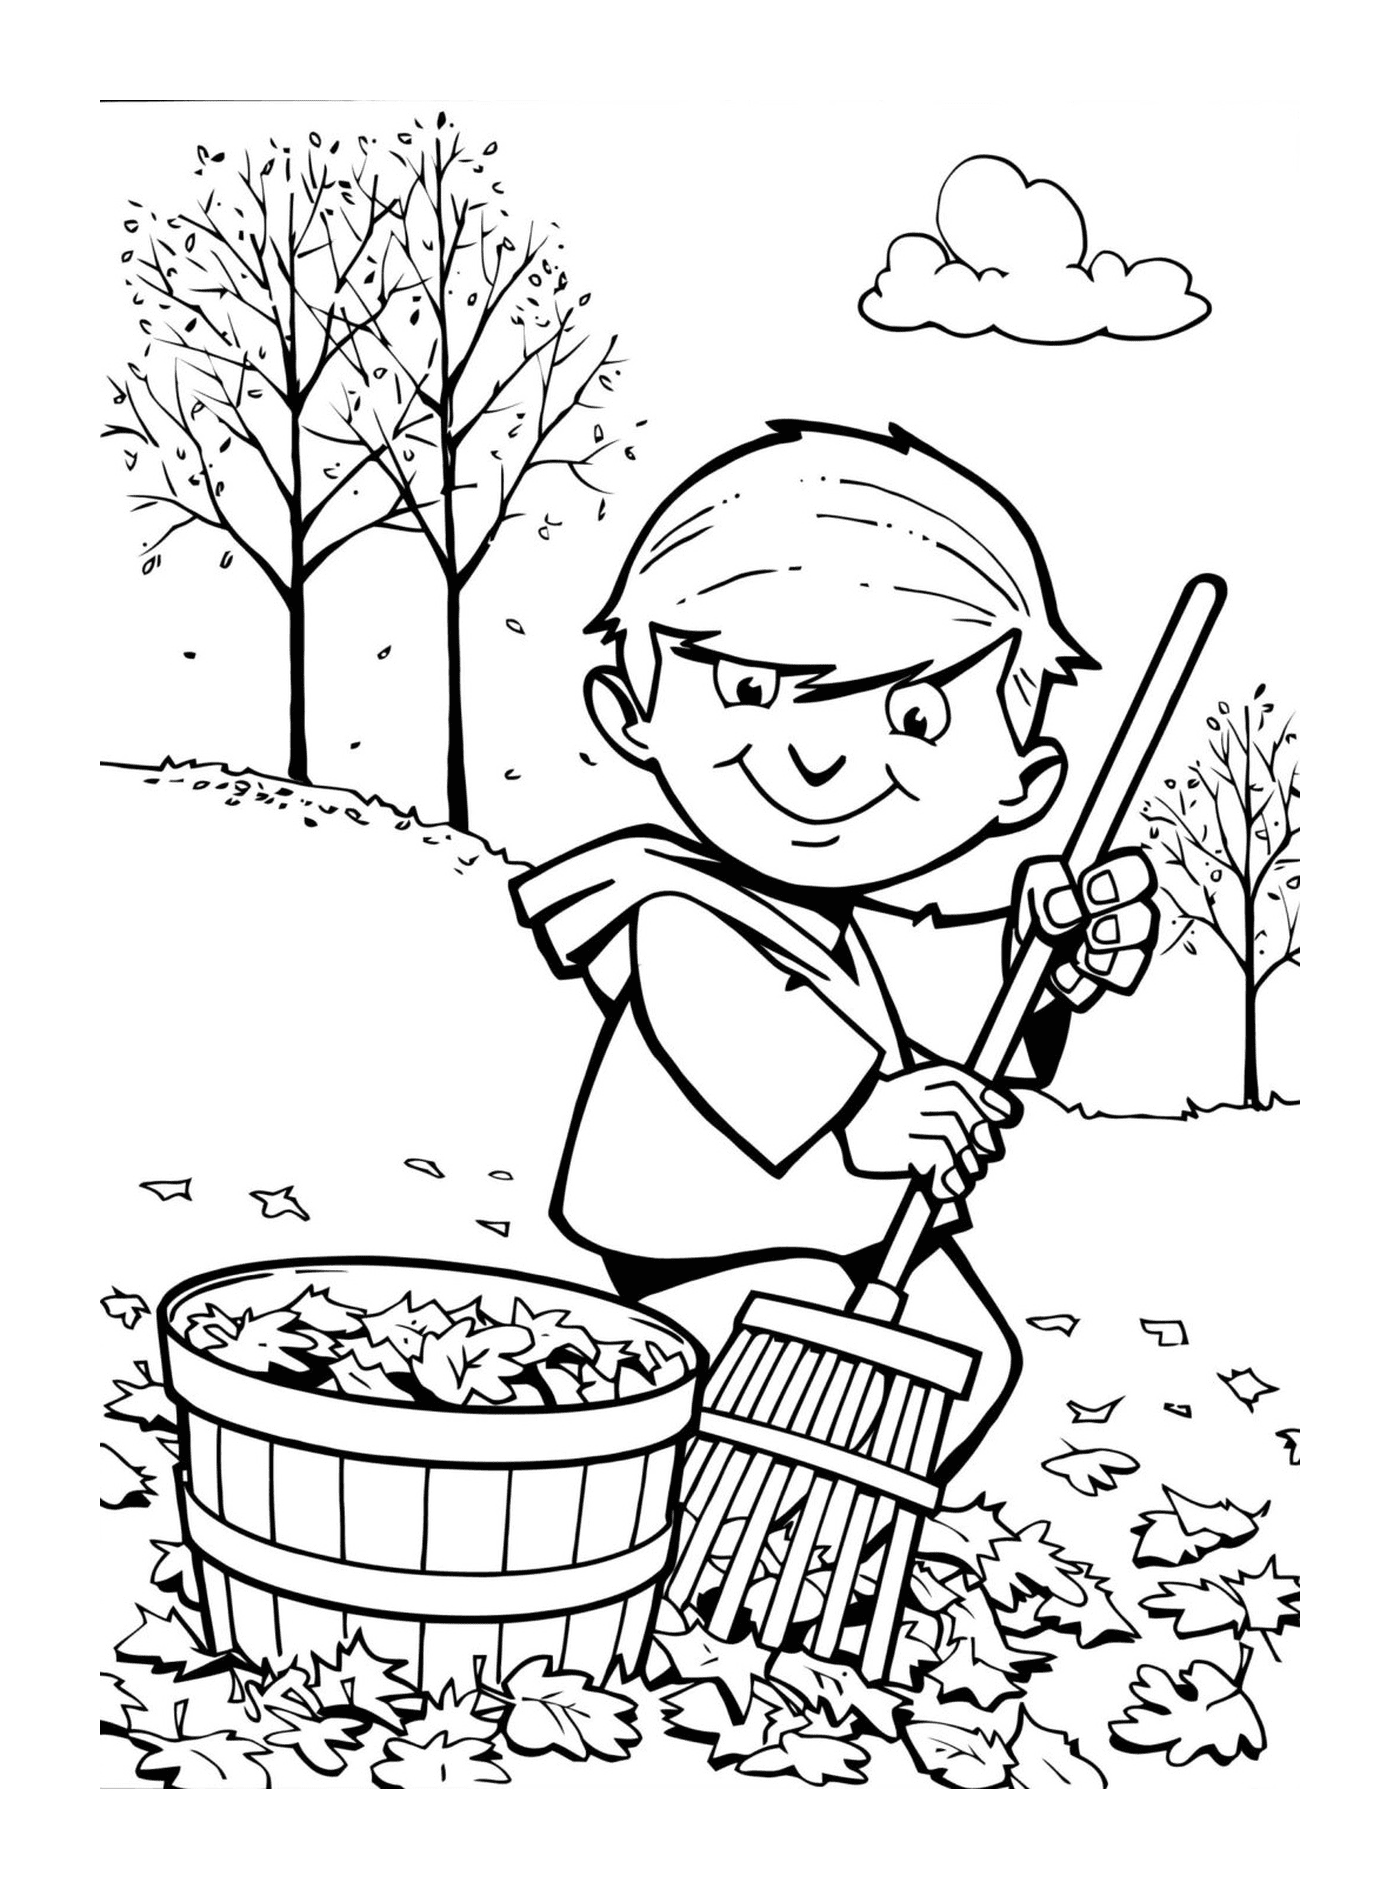  Bambino che raccoglie foglie d'autunno 